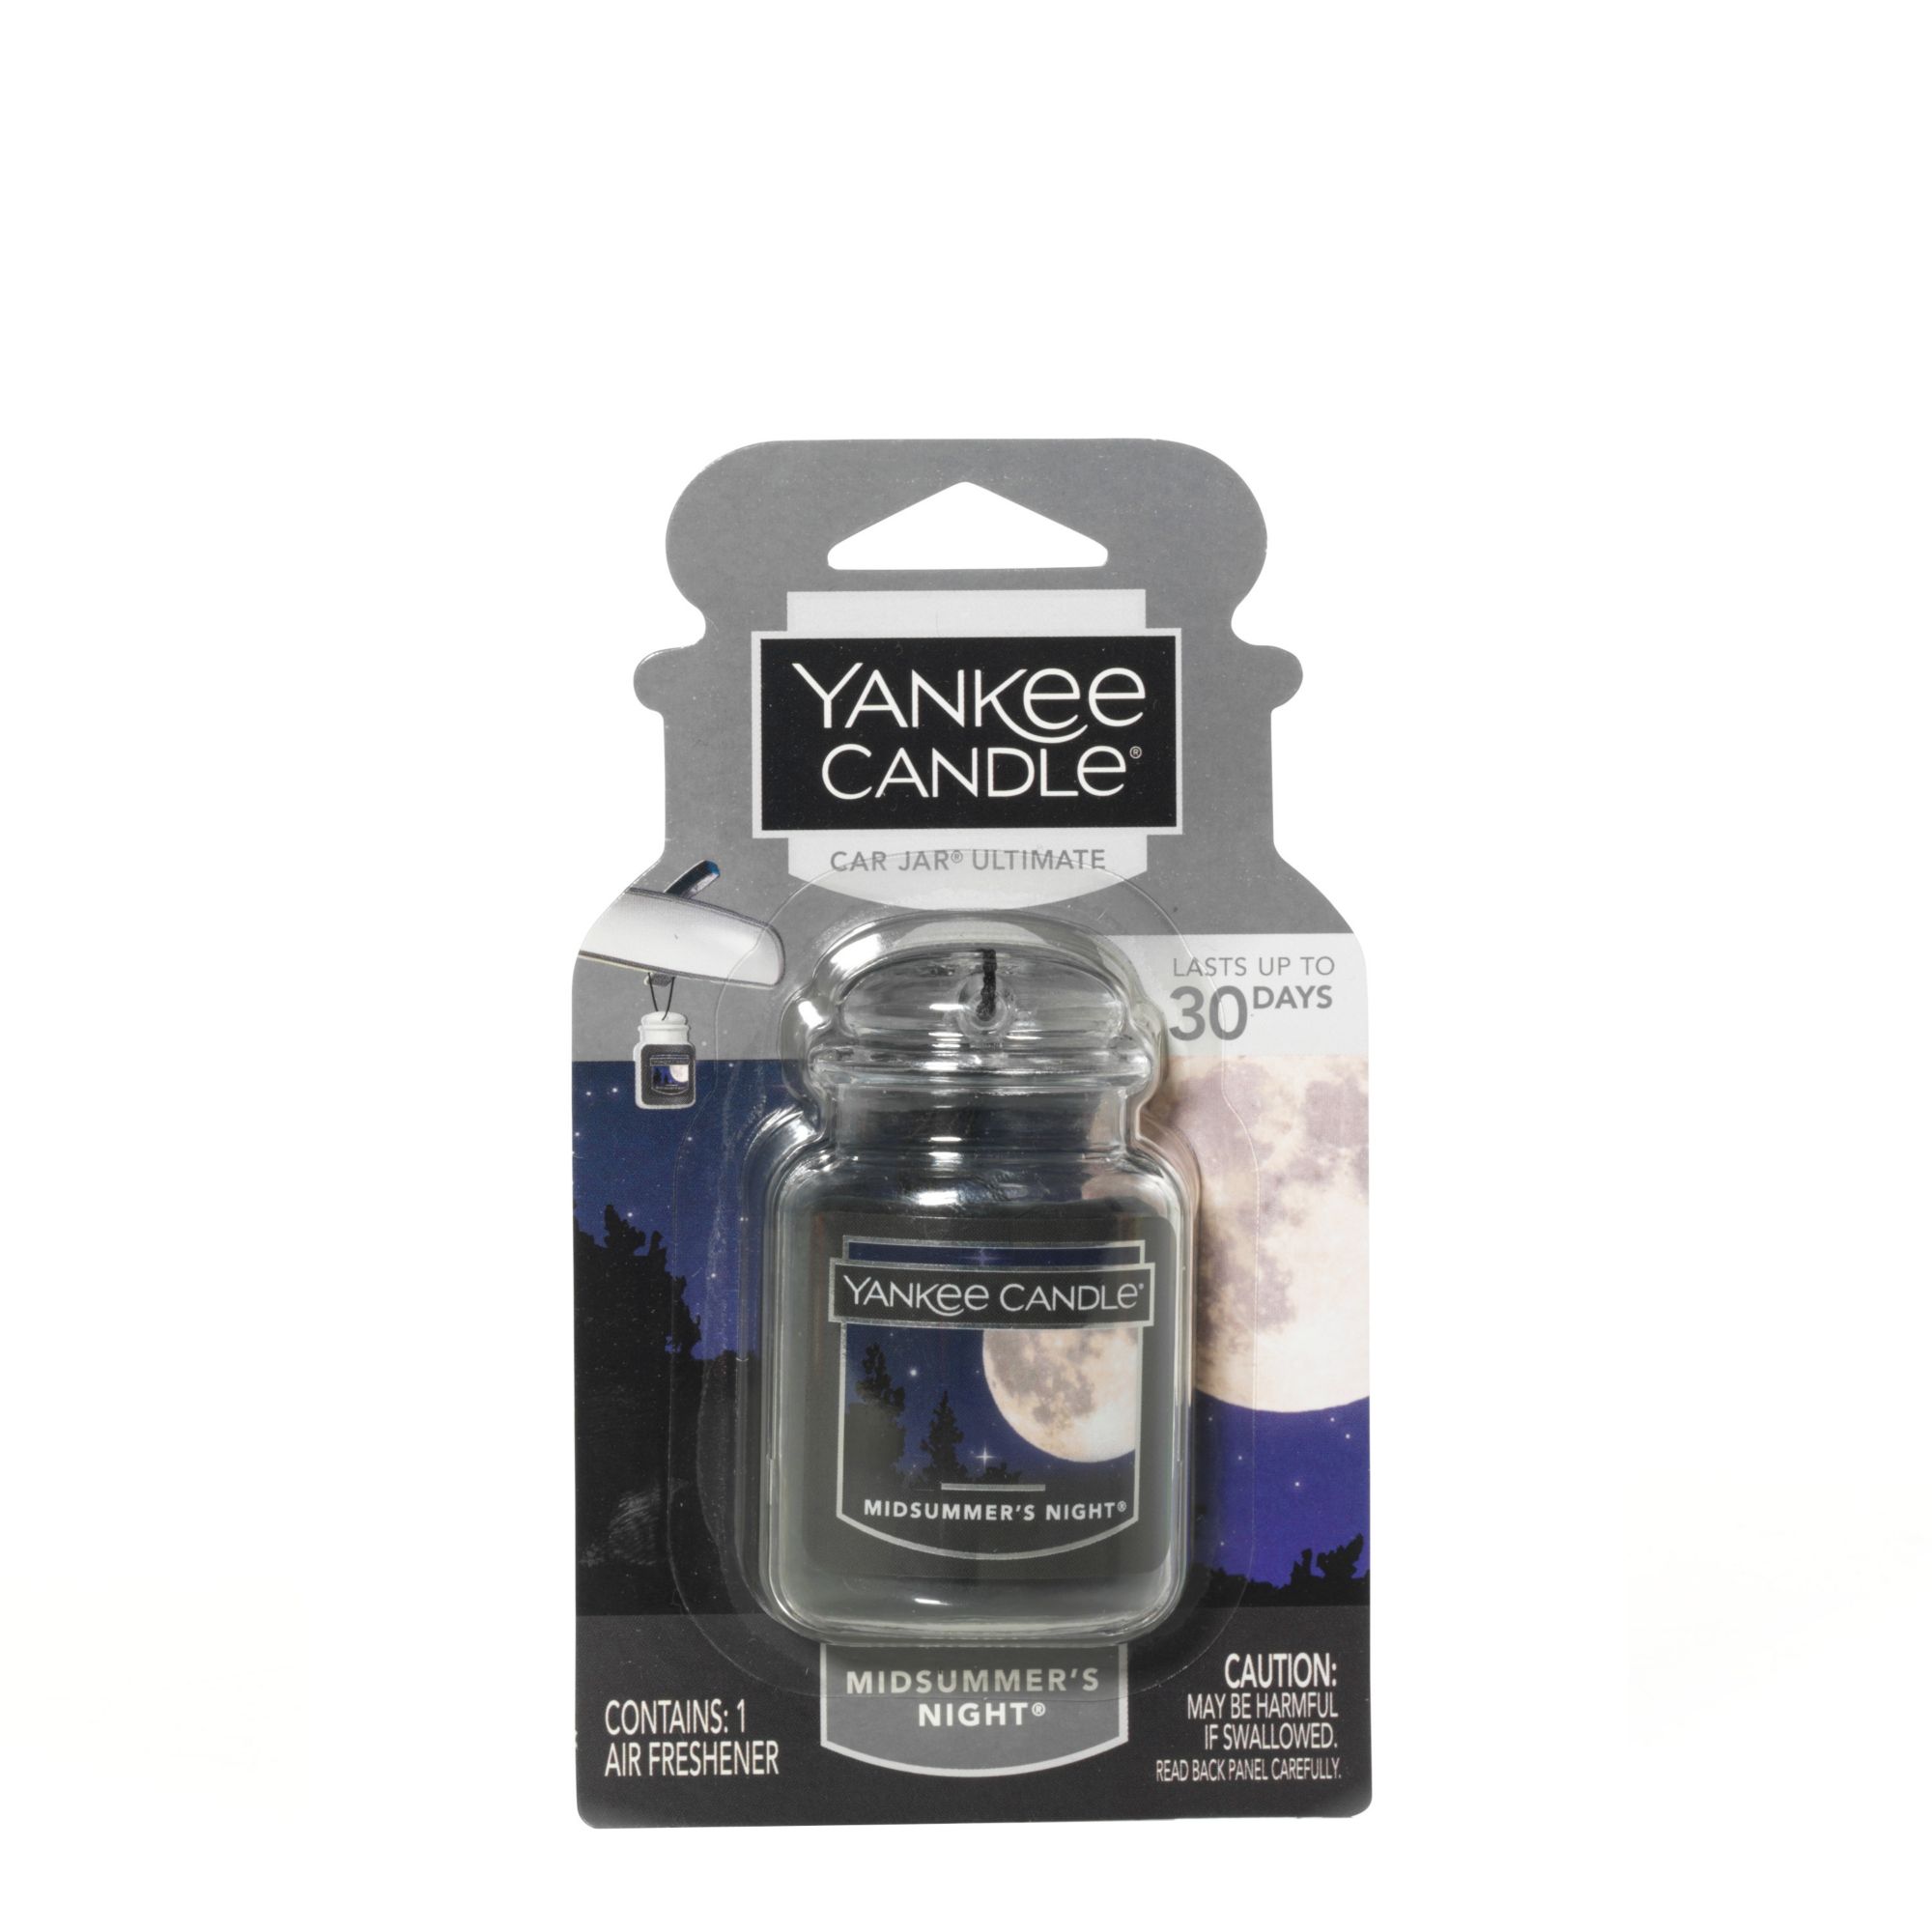 Buy Yankee Candle Car Jar Ultimate Car Air Freshener